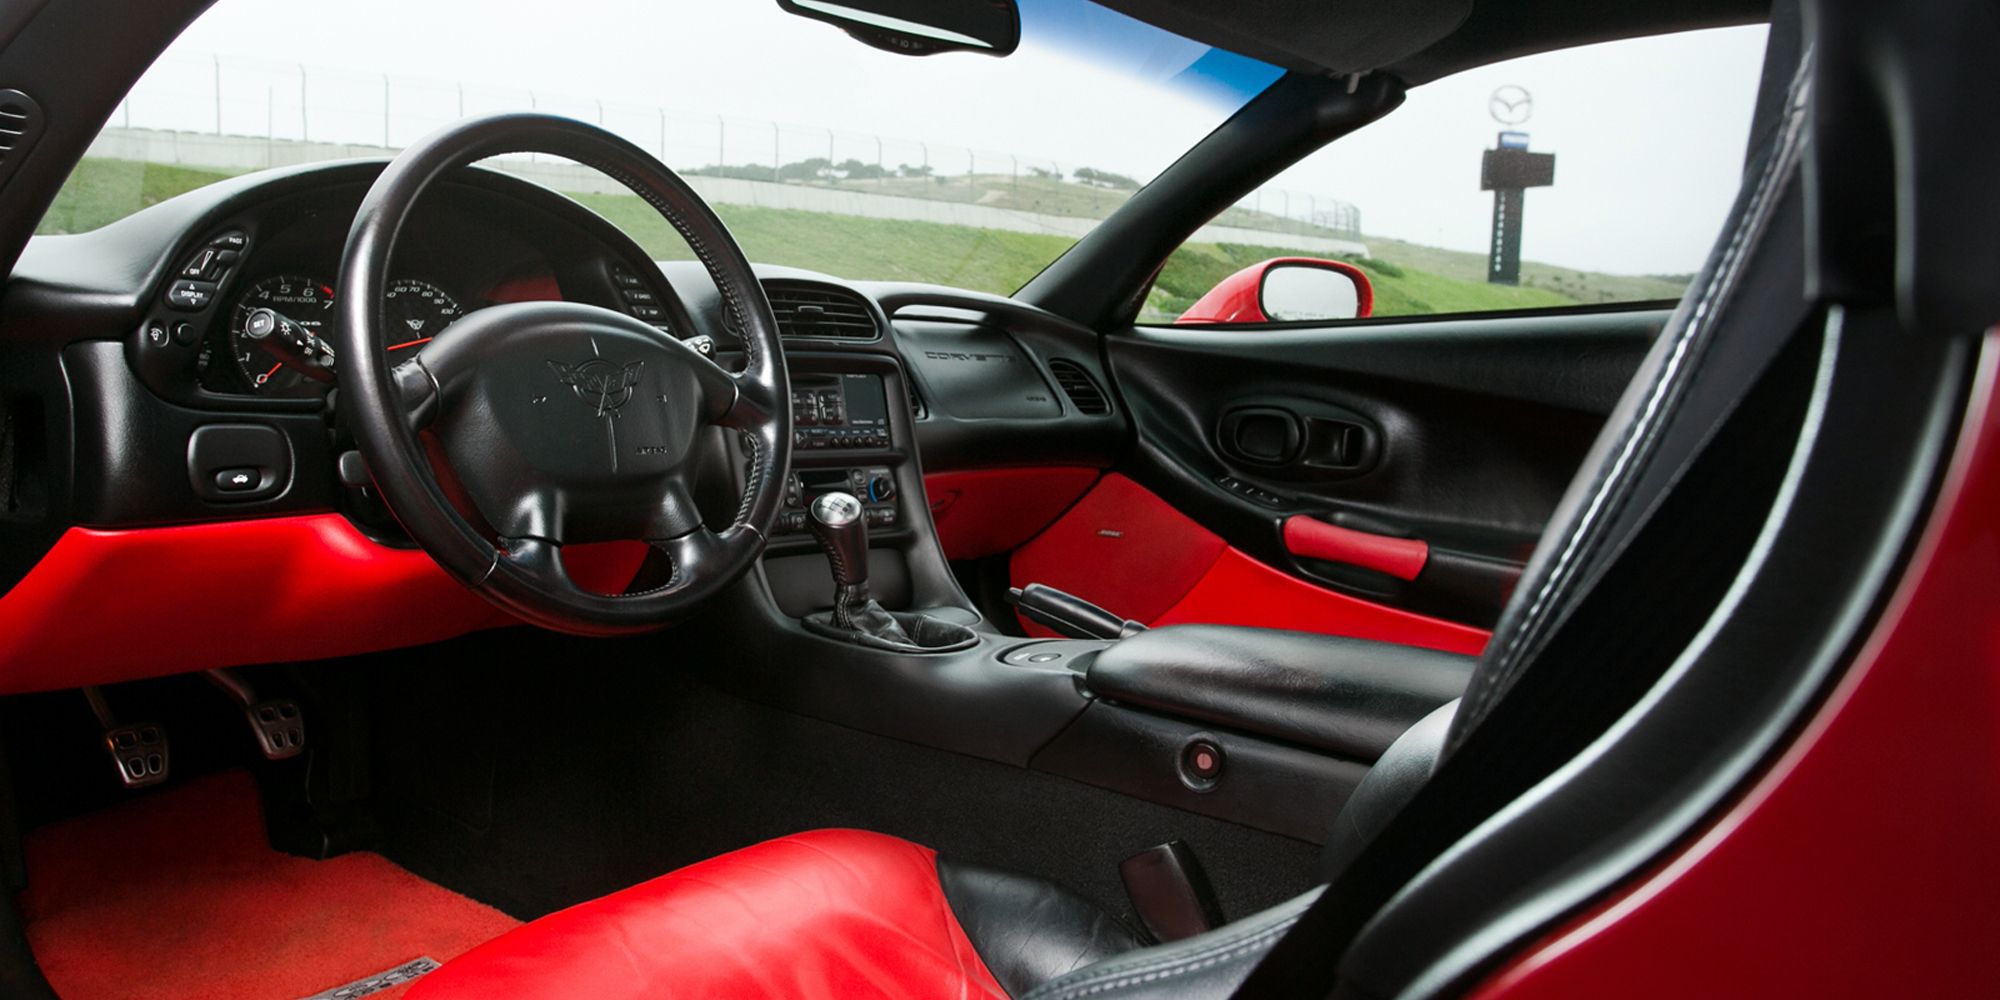 The interior of the C5 Corvette Z06